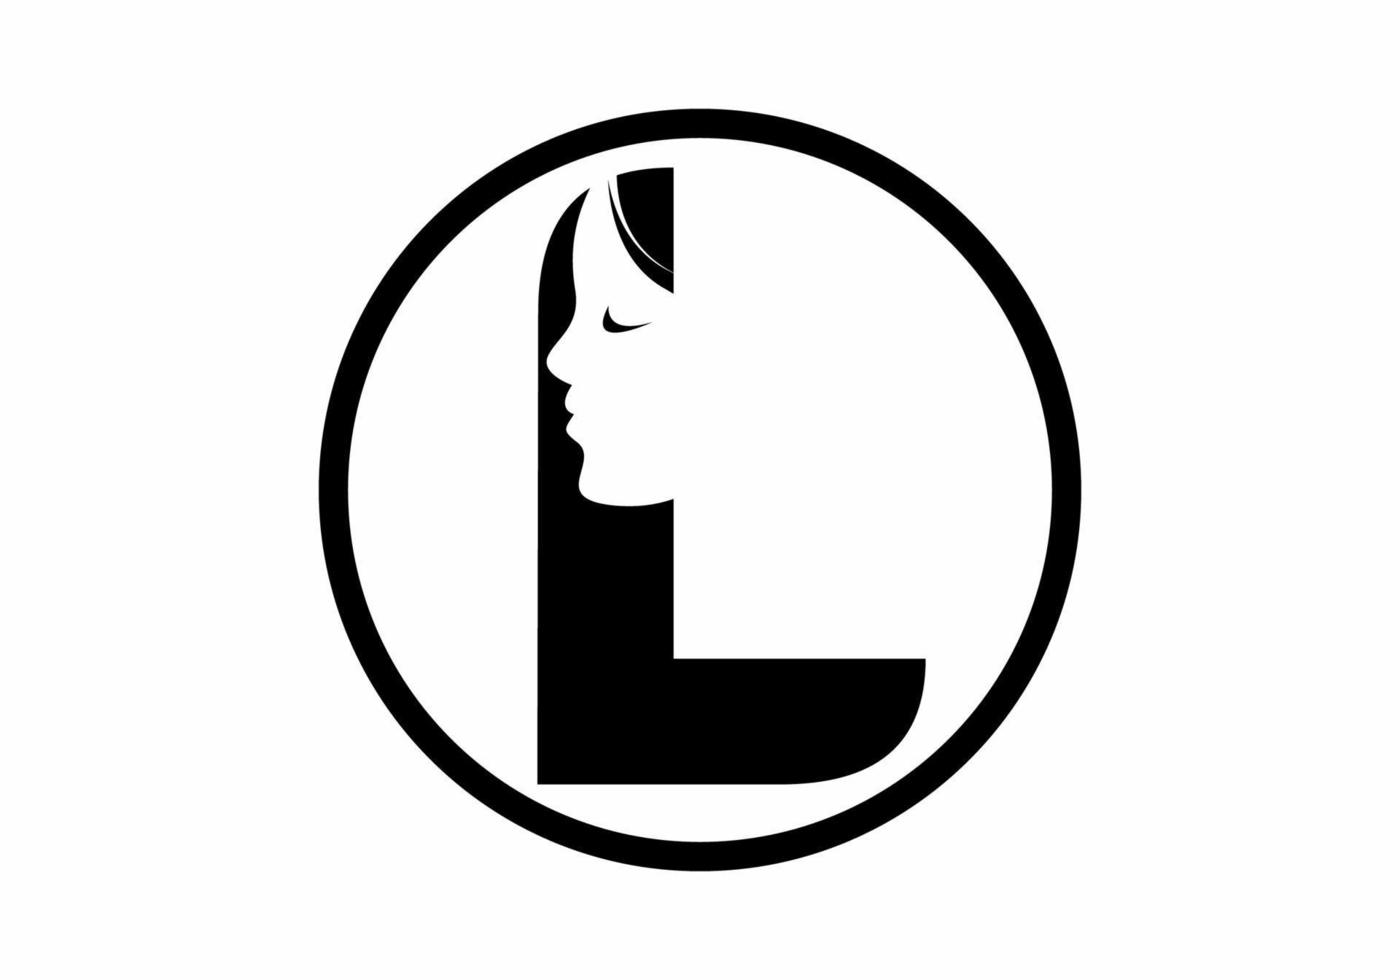 noir et blanc l lettre initiale avec silhouette de visage de femme en cercle vecteur